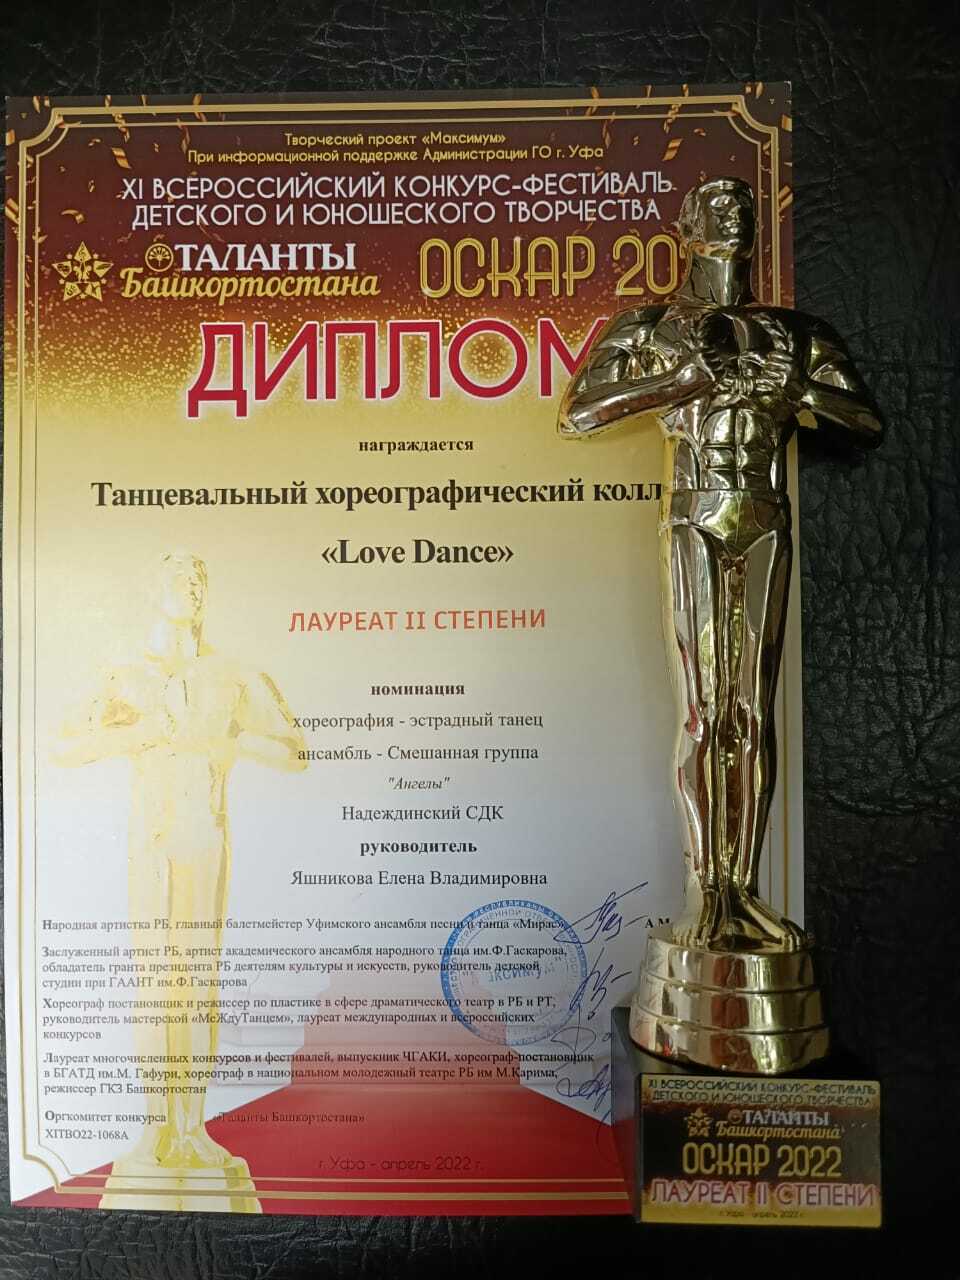 Надеждинские танцоры заняли второе место во Всероссийском конкурсе-фестивале детского и юношеского творчества «Таланты Башкортостана Оскар 2022»